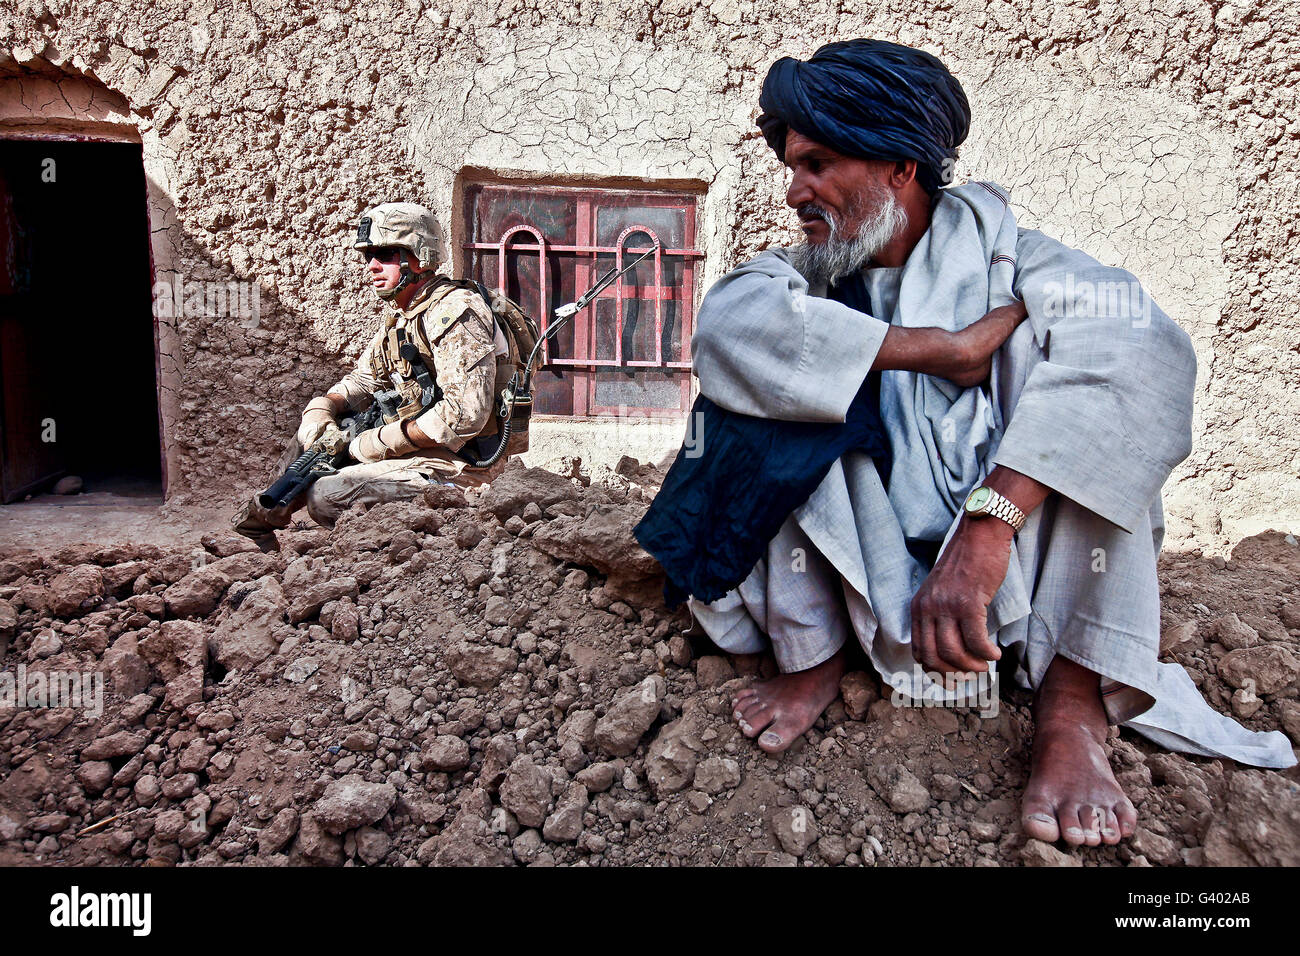 Un soldato raccoglie informazioni da abitanti di un villaggio afgano durante una pattuglia. Foto Stock